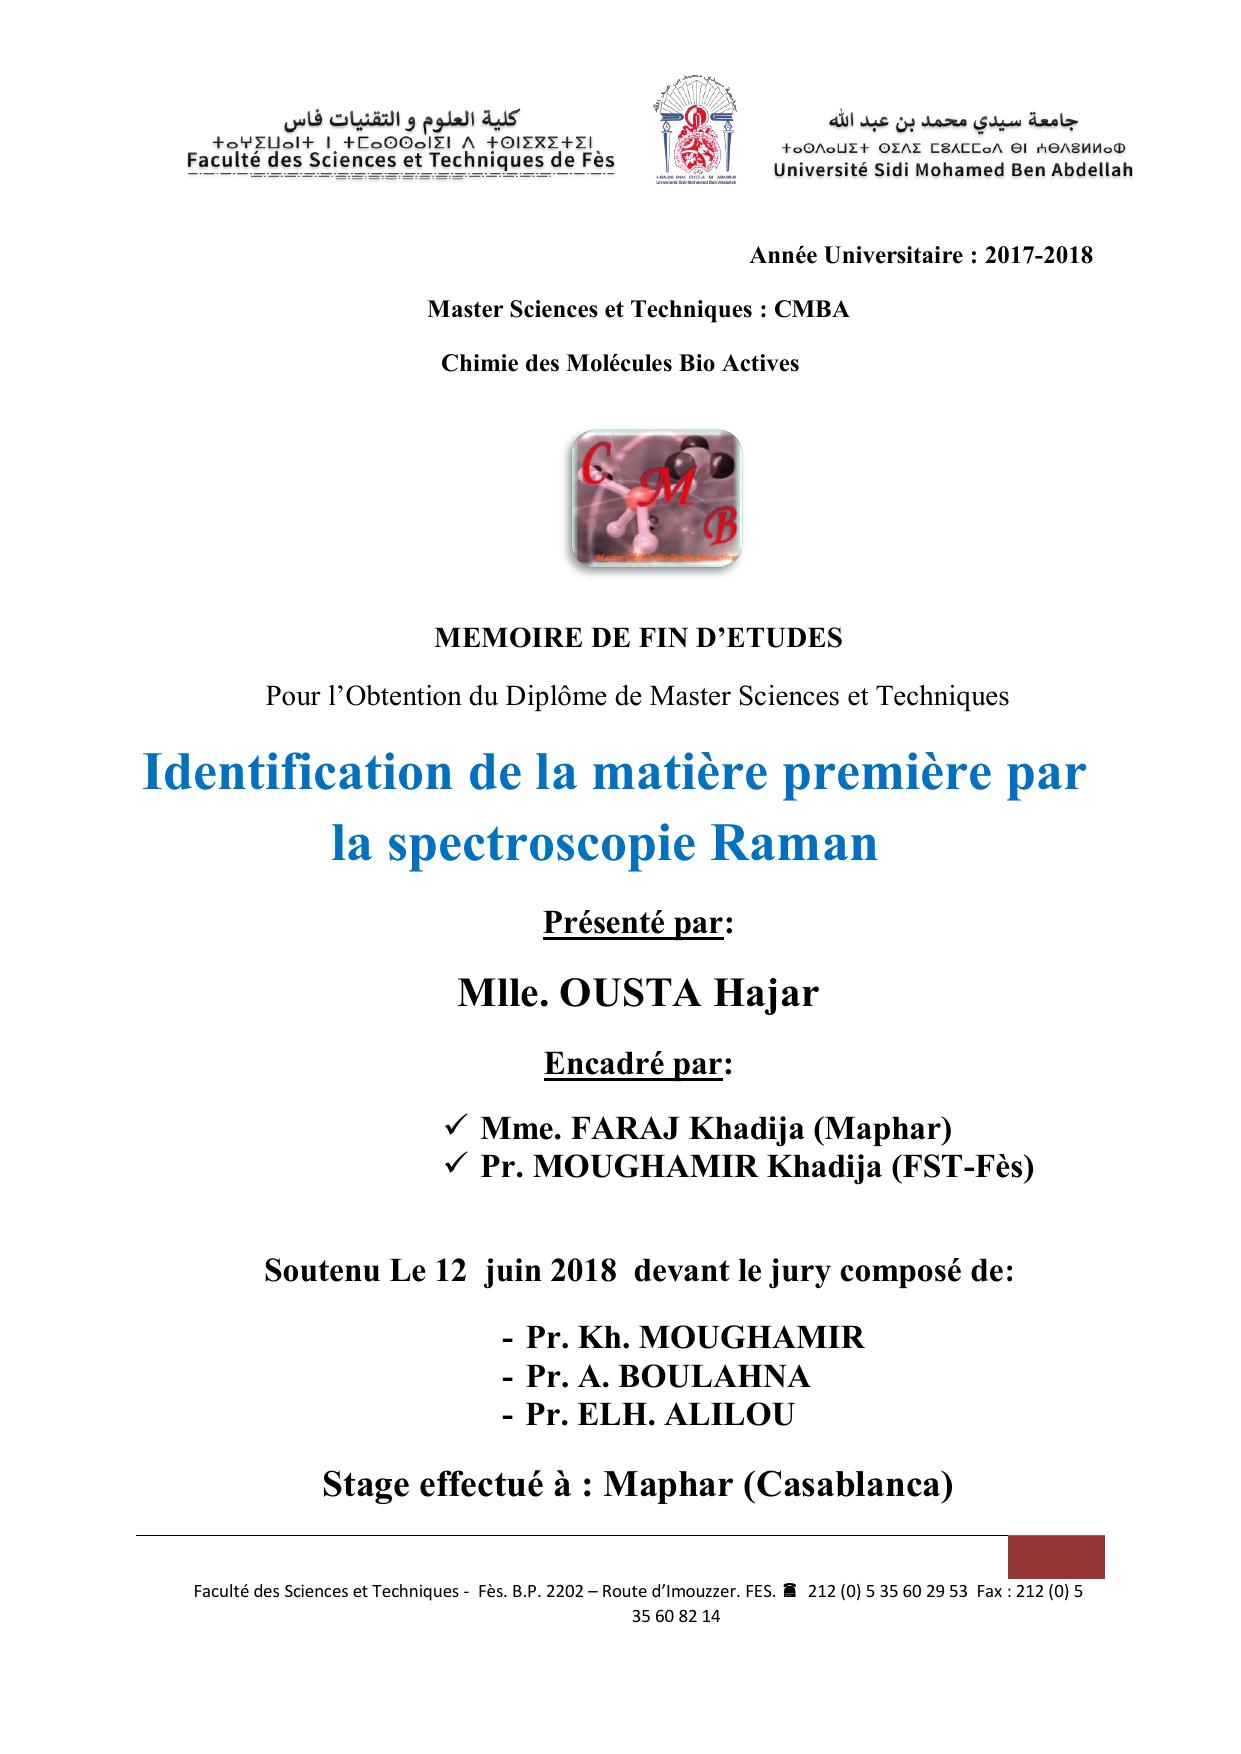 Identification de la matière première par la spectroscopie Raman